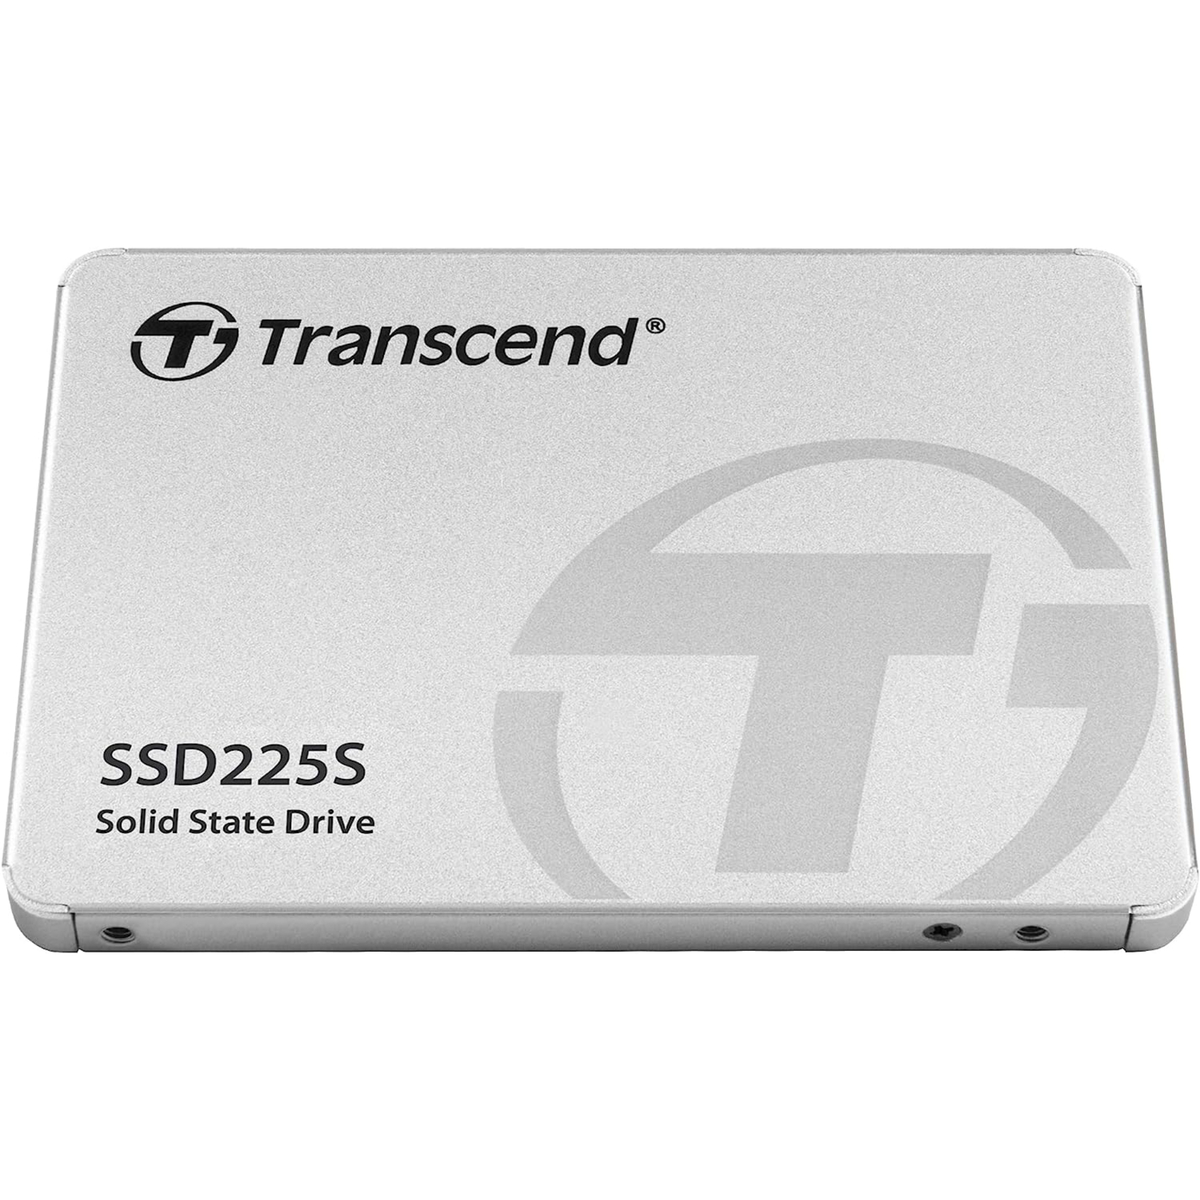 Transcend Internal SSD, 500 GB, GSSD225S